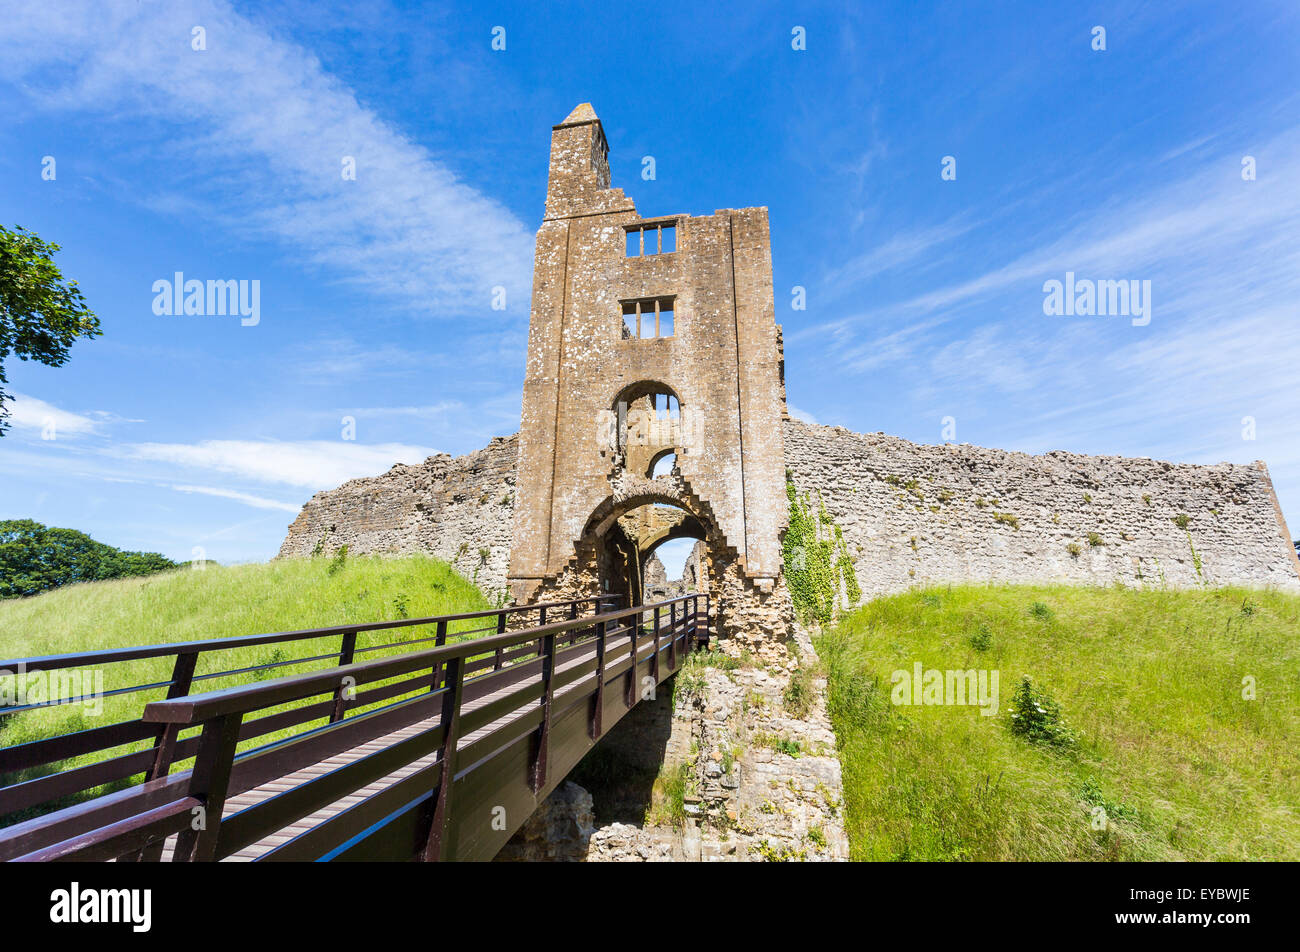 Ingresso alle rovine di Sherborne antico castello del XII secolo il palazzo medievale, Sherborne, Dorset, Regno Unito in estate con il blu del cielo Foto Stock